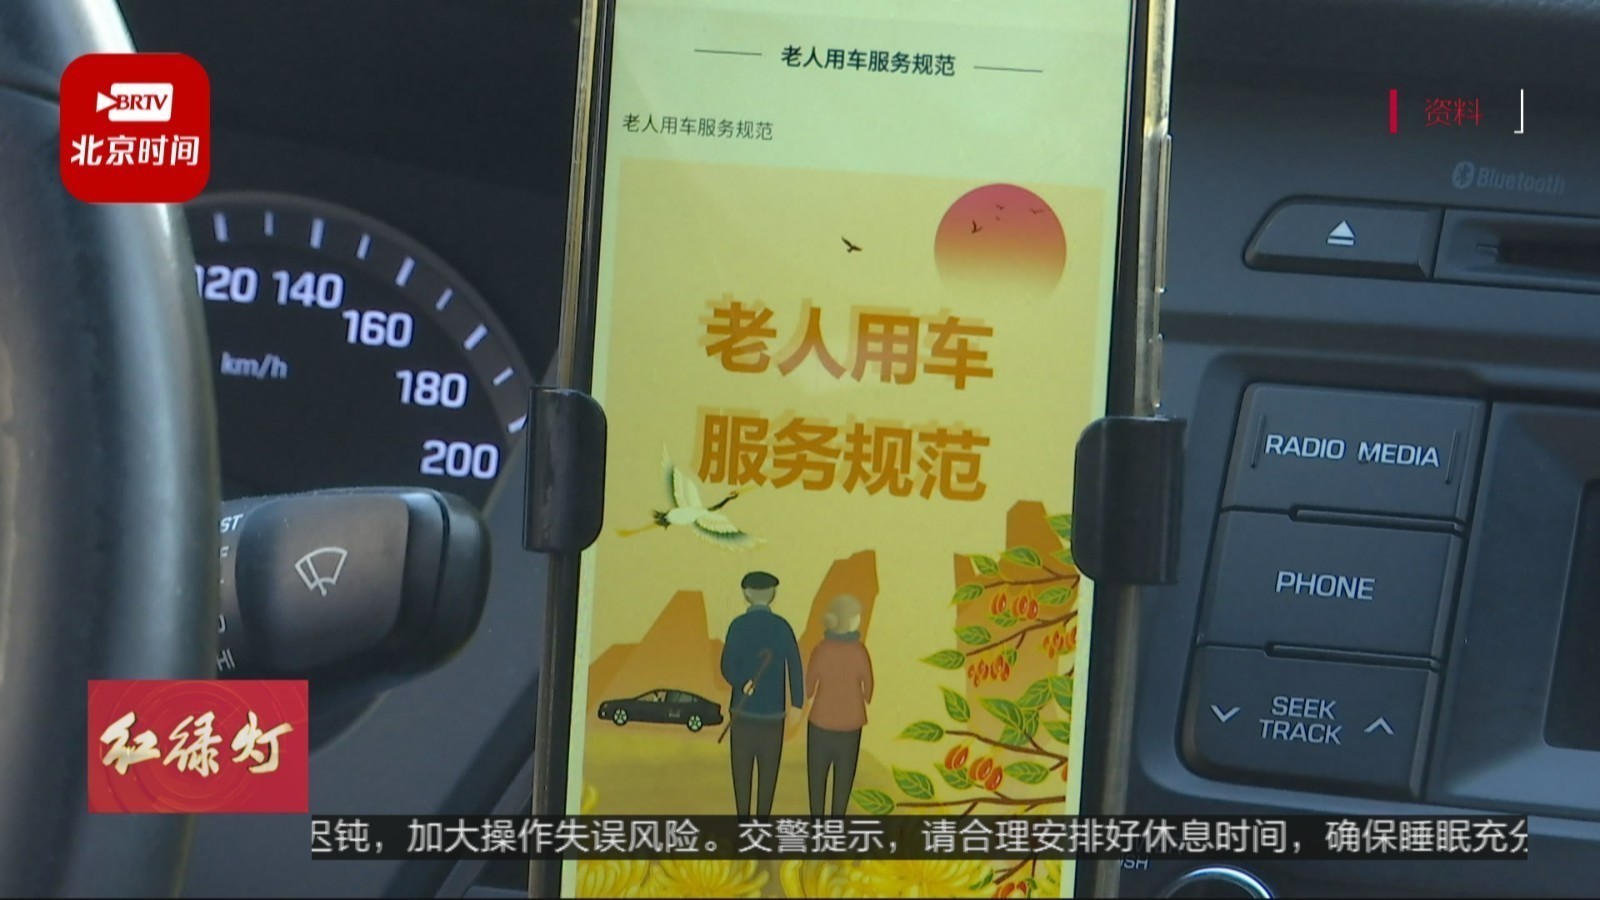 北京年满七旬老人 每年可领200元就医出行补贴